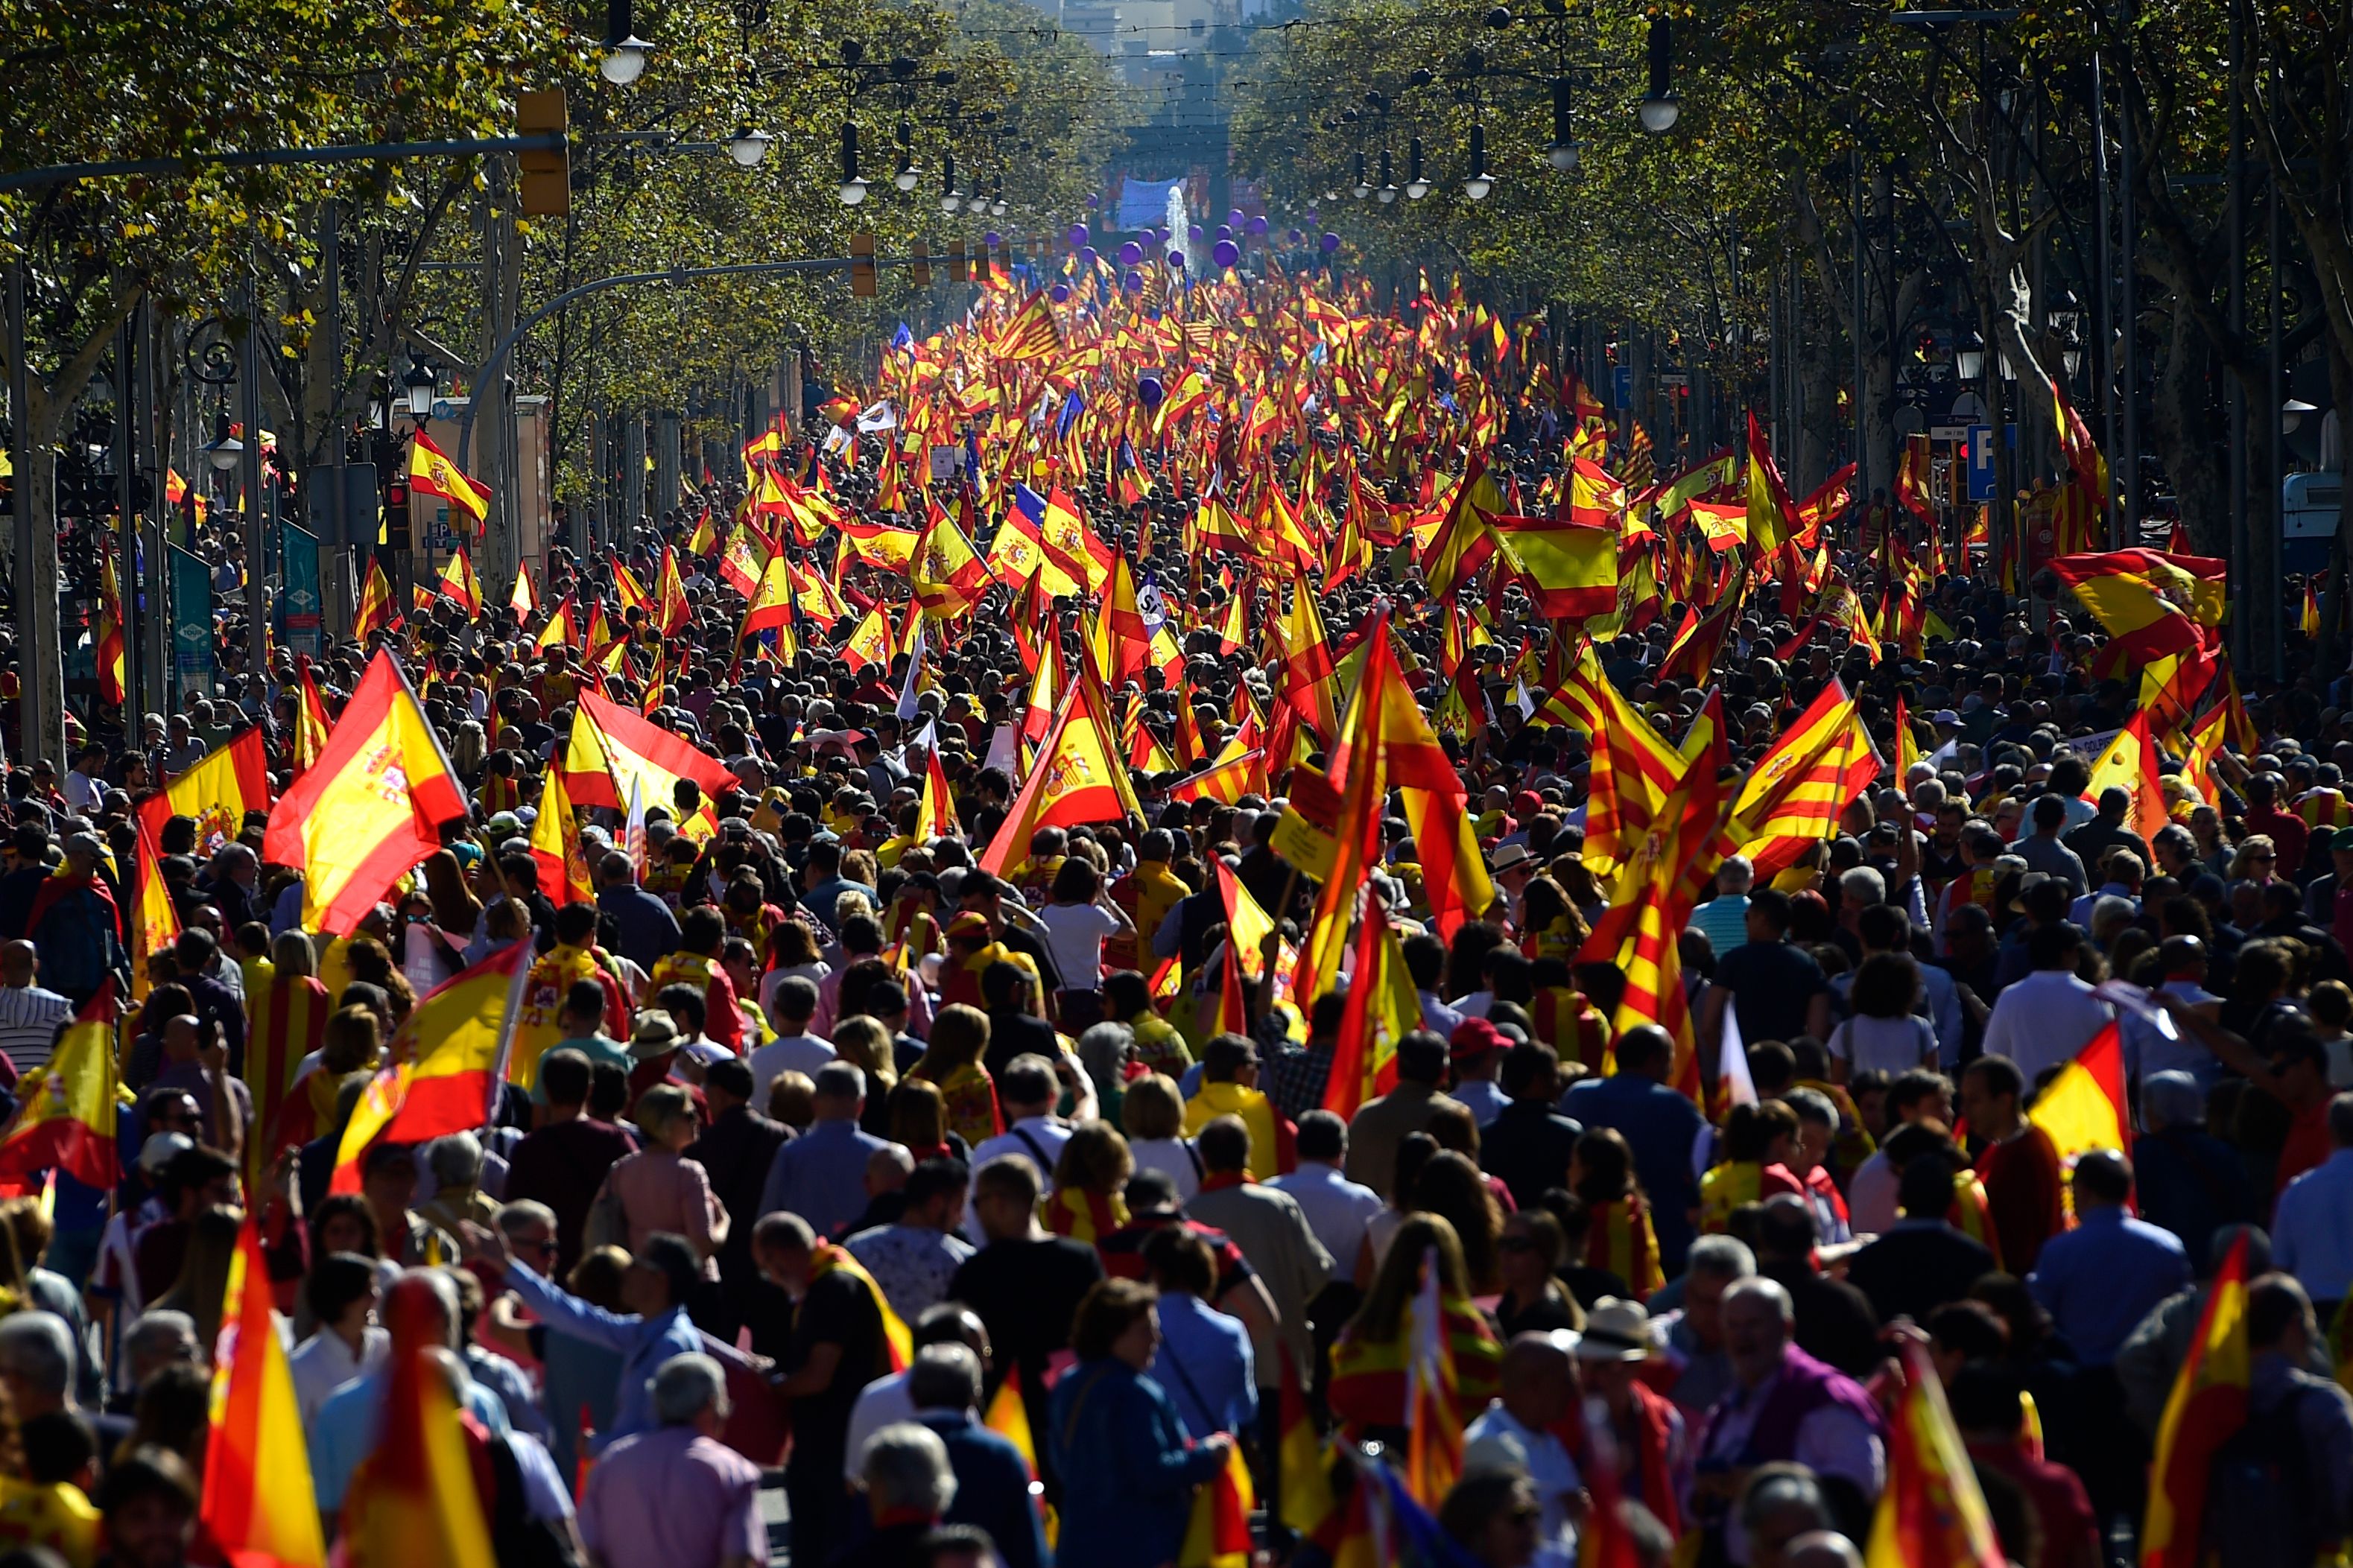 شوارع برشلونة تمتلئ بالمتظاهرين الرافضين لاستقلال كتالونيا